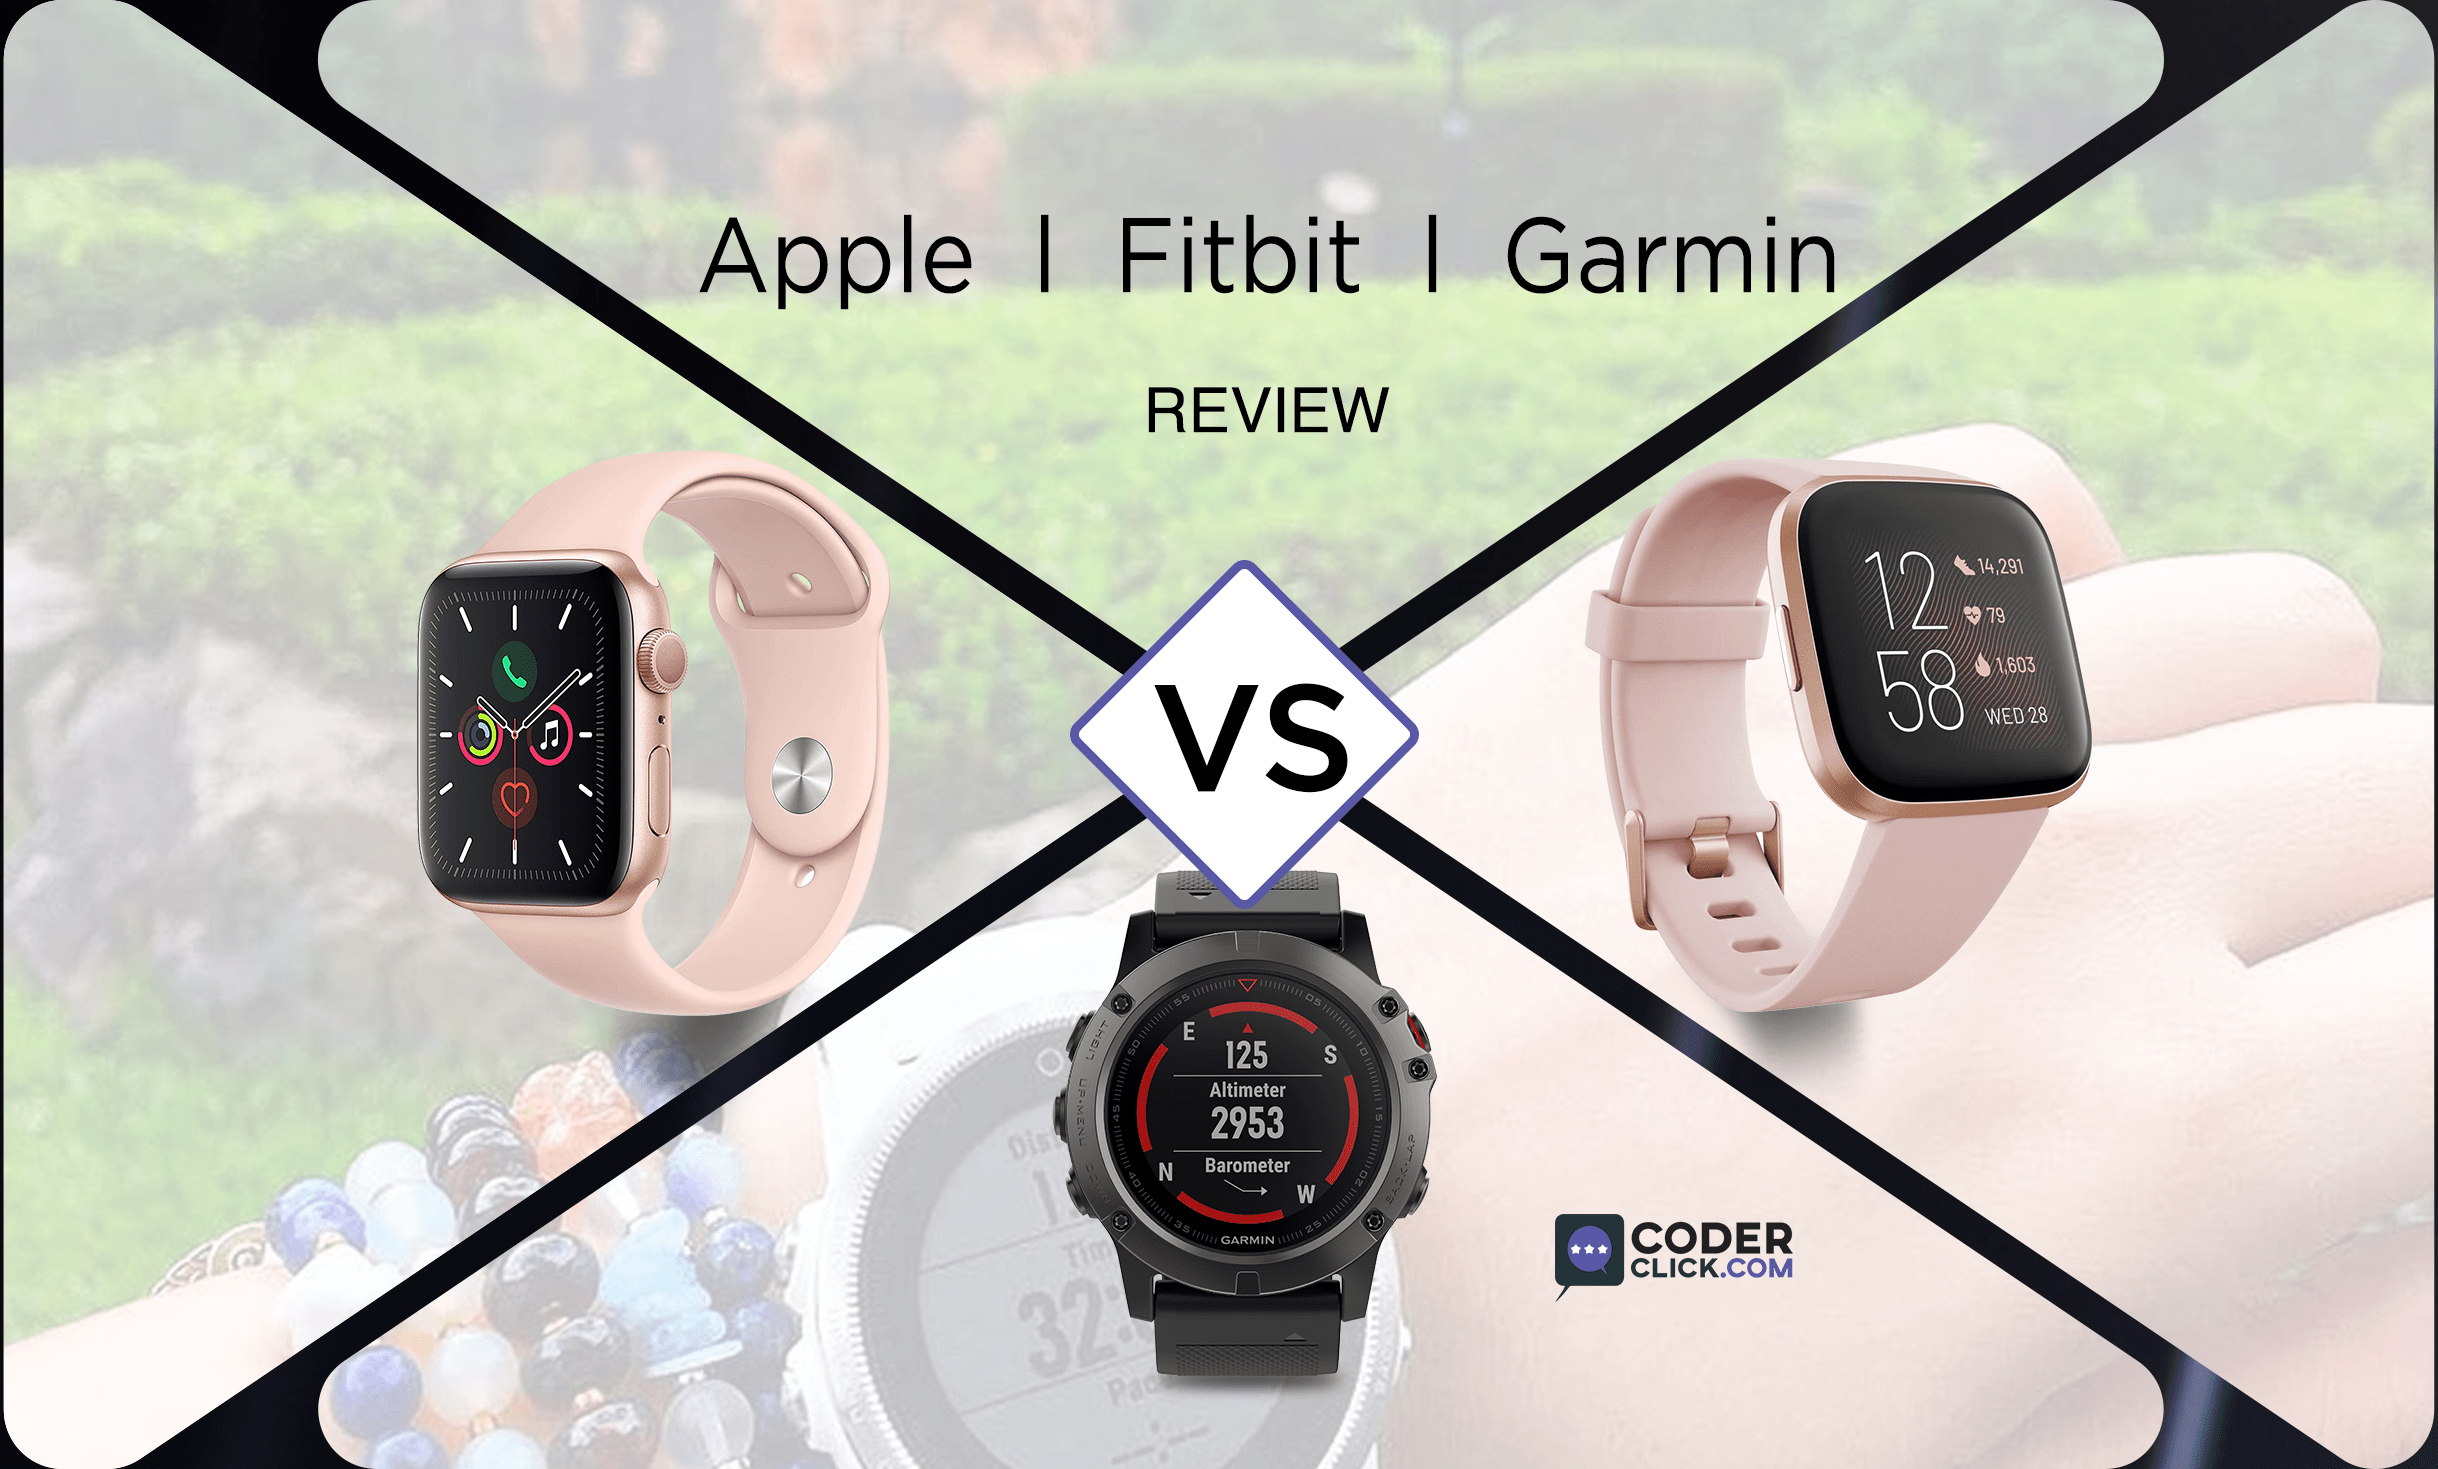 garmin vs apple vs fitbit